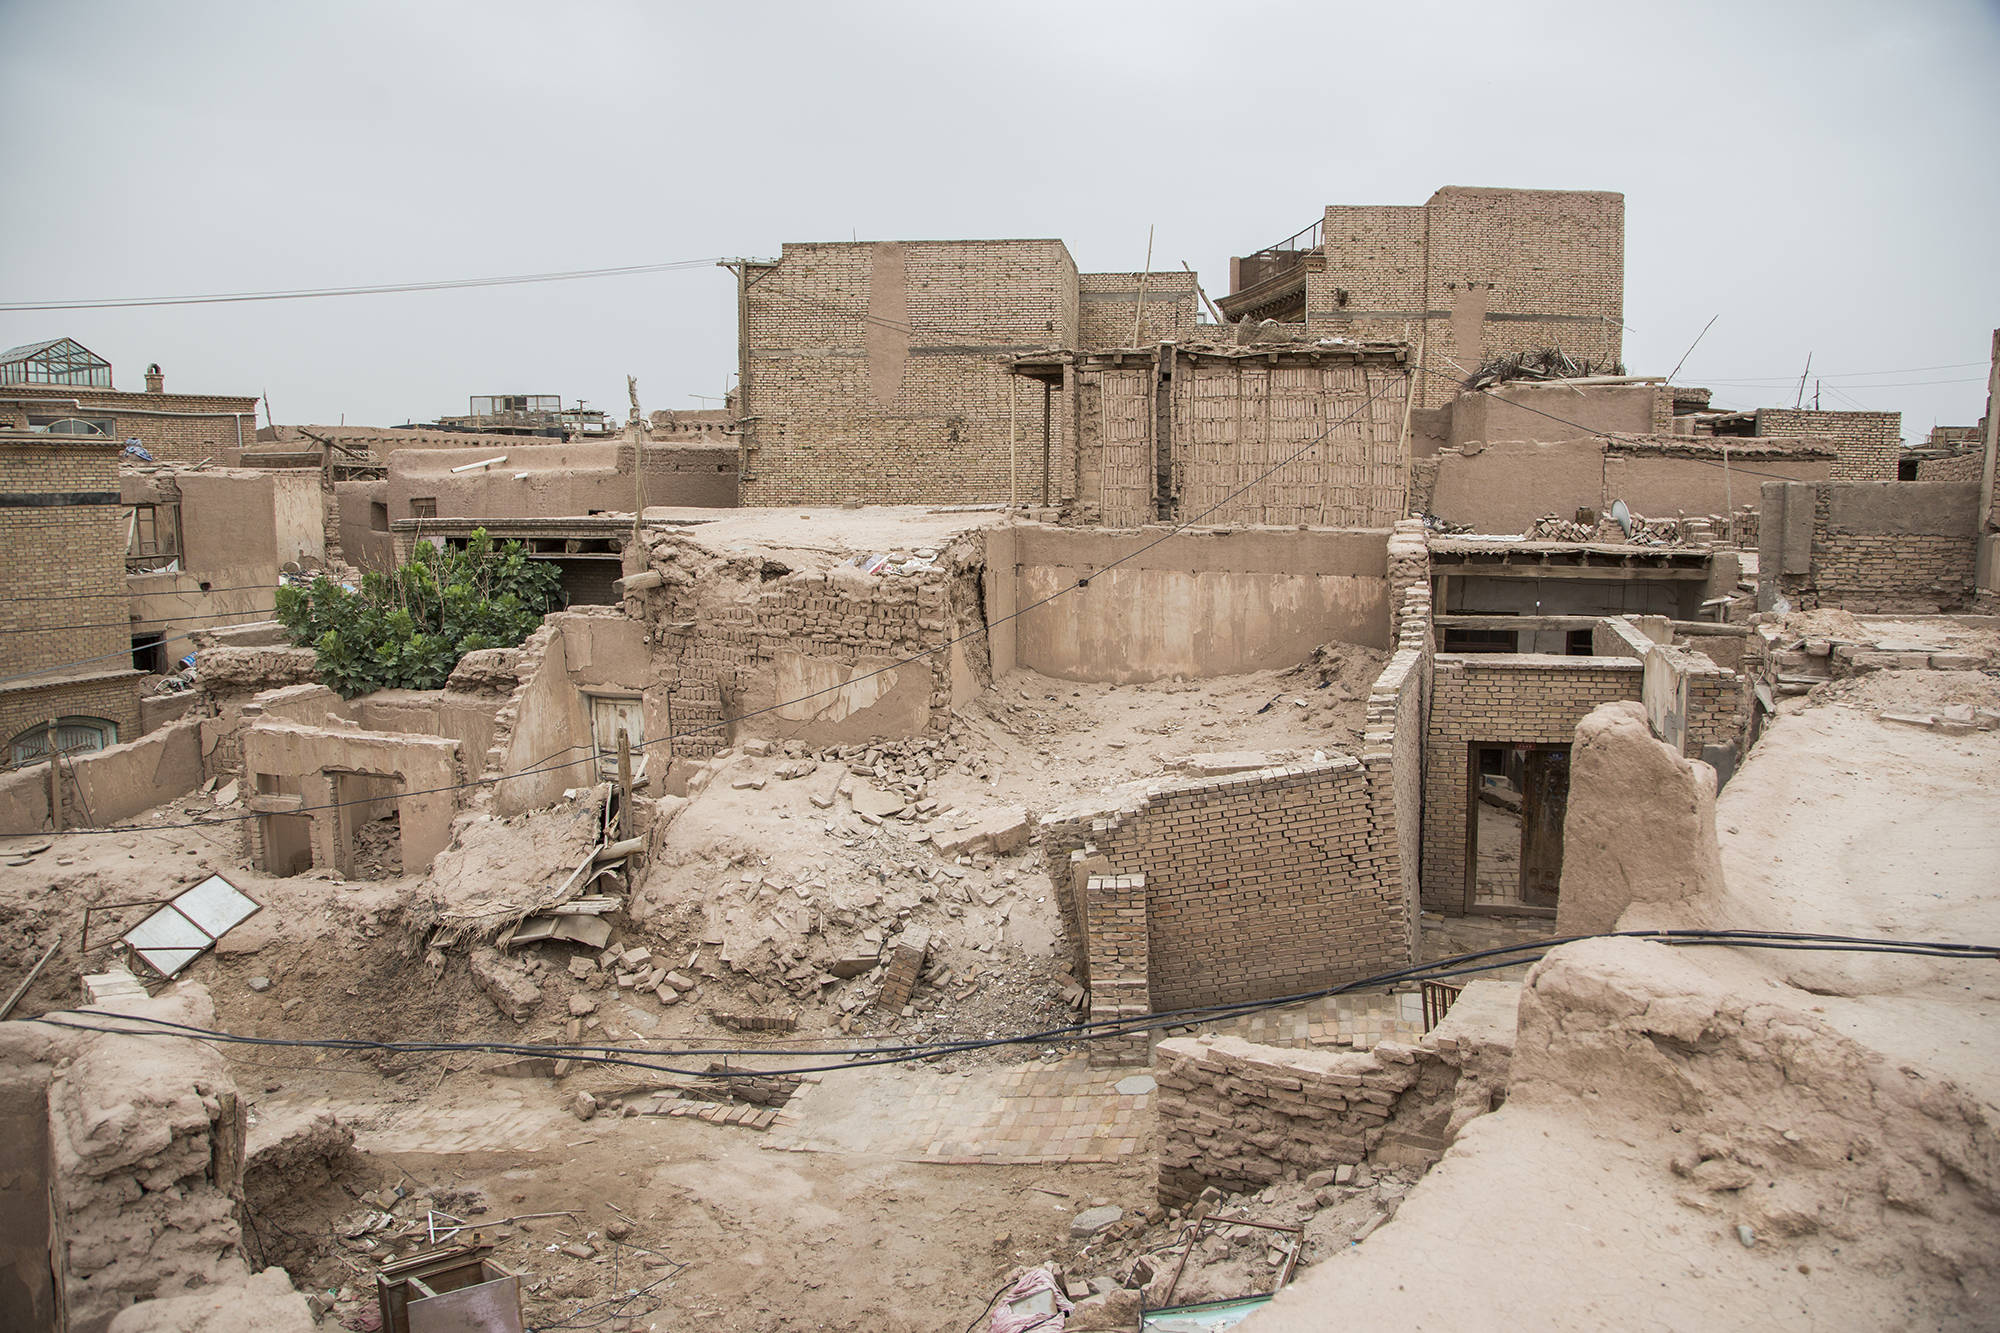 1/ 12 高台民居是新疆喀什市老城东北端一处建于高40多米,长800多米